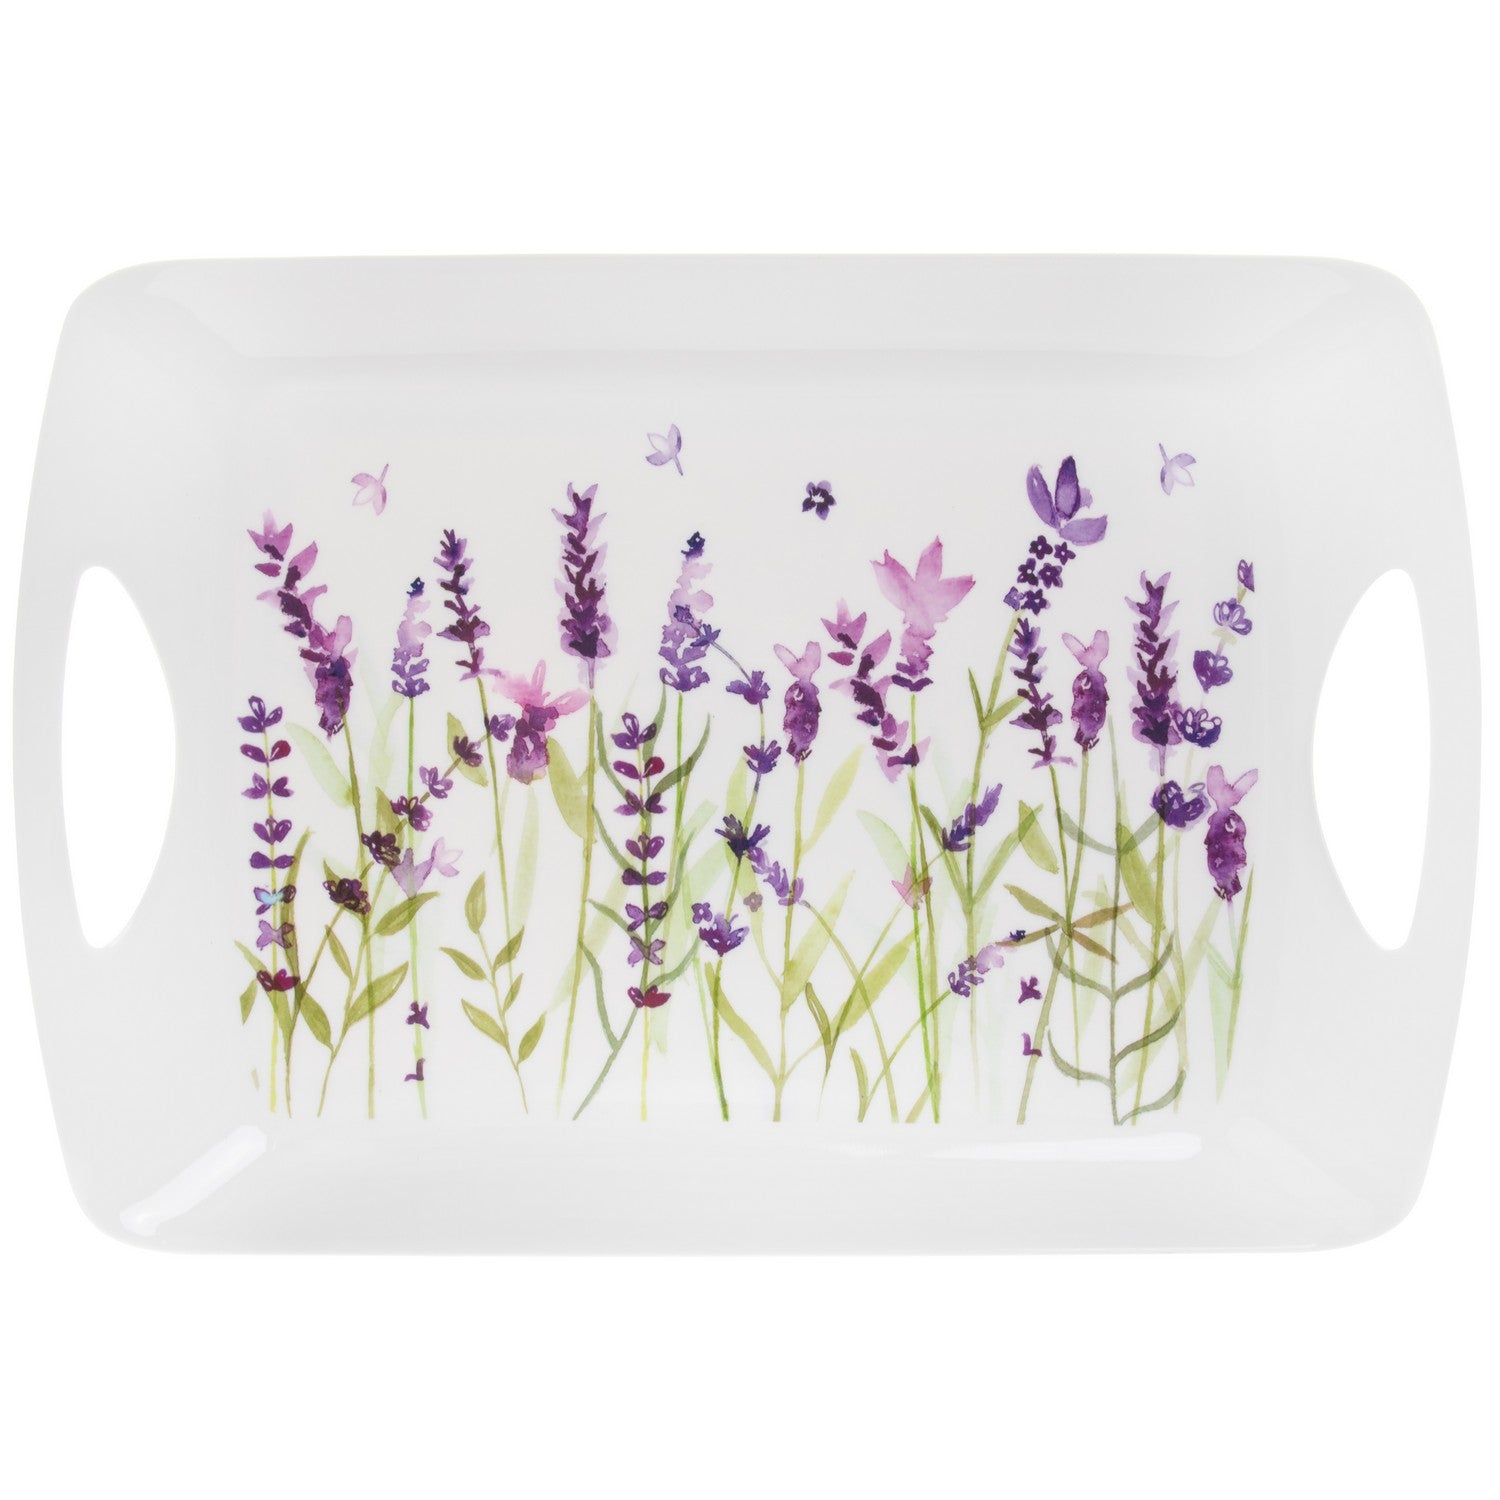 Lavender Flower Design Large Serving Tray